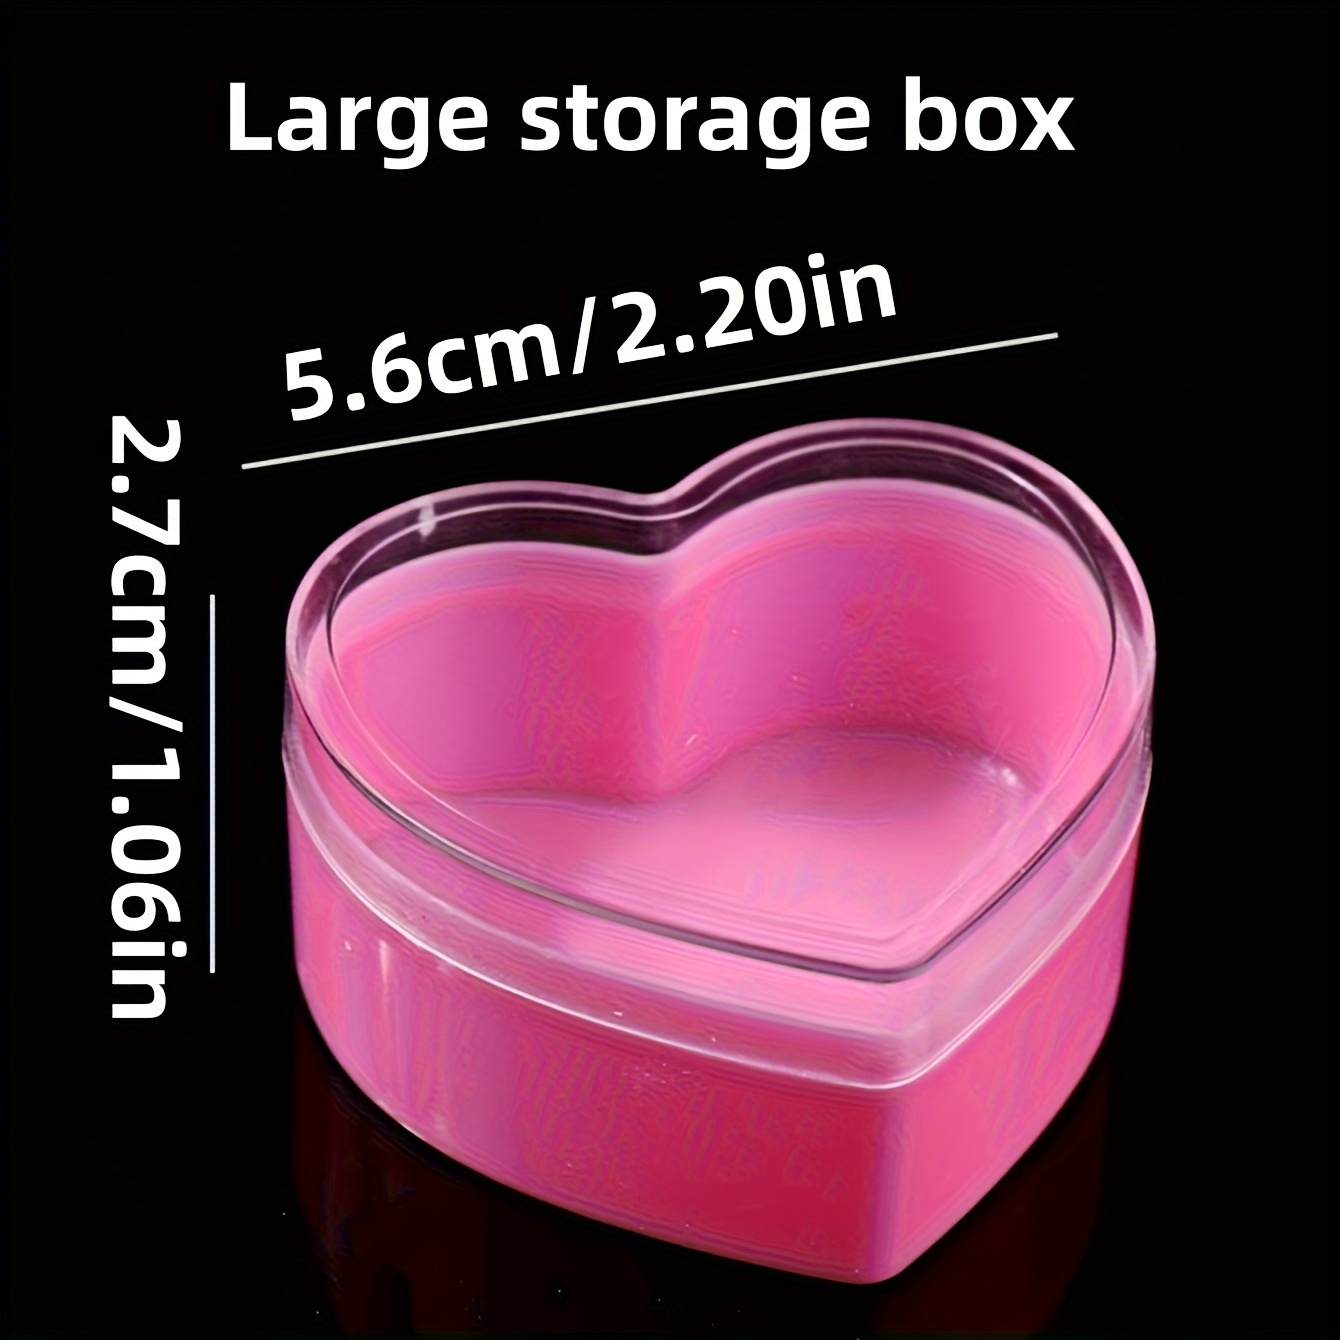 Caja De Almacenamiento De Contenedores De Plástico Con Tapa Rosa